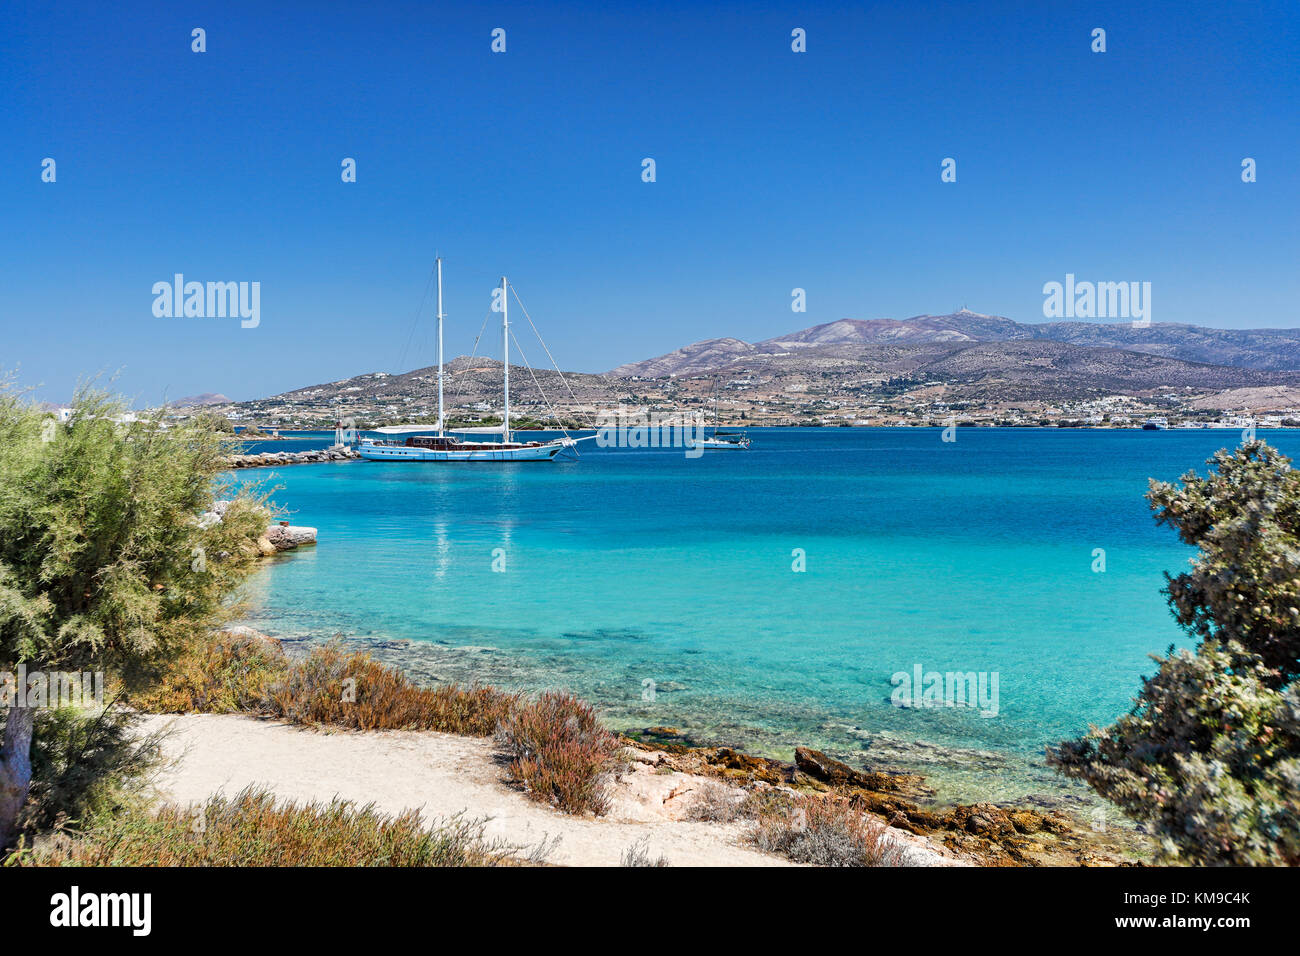 Bateaux au port d'Antiparos island, Grèce Banque D'Images